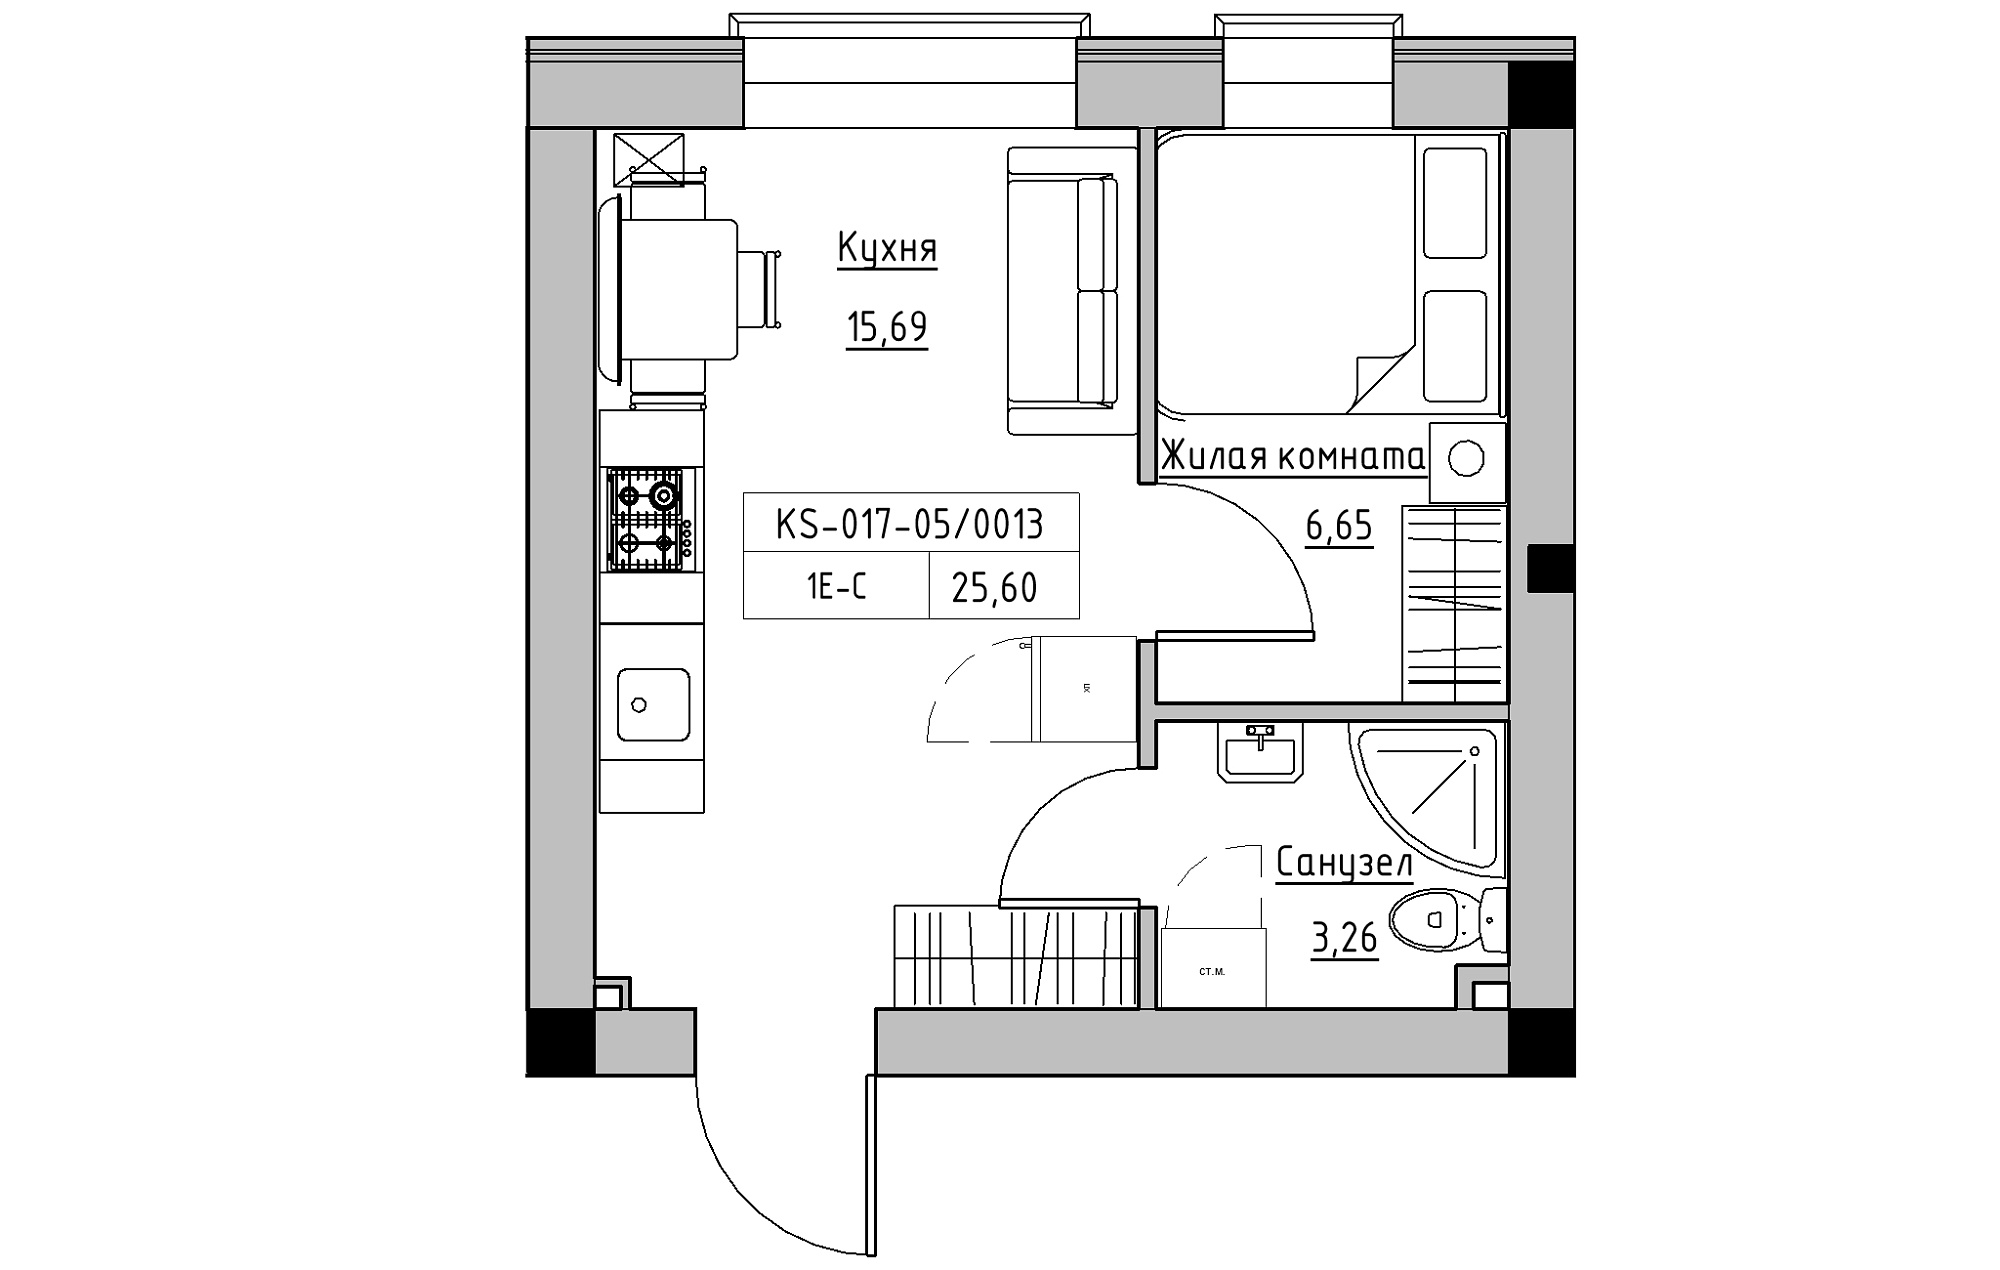 Планування 1-к квартира площею 25.6м2, KS-017-05/0013.